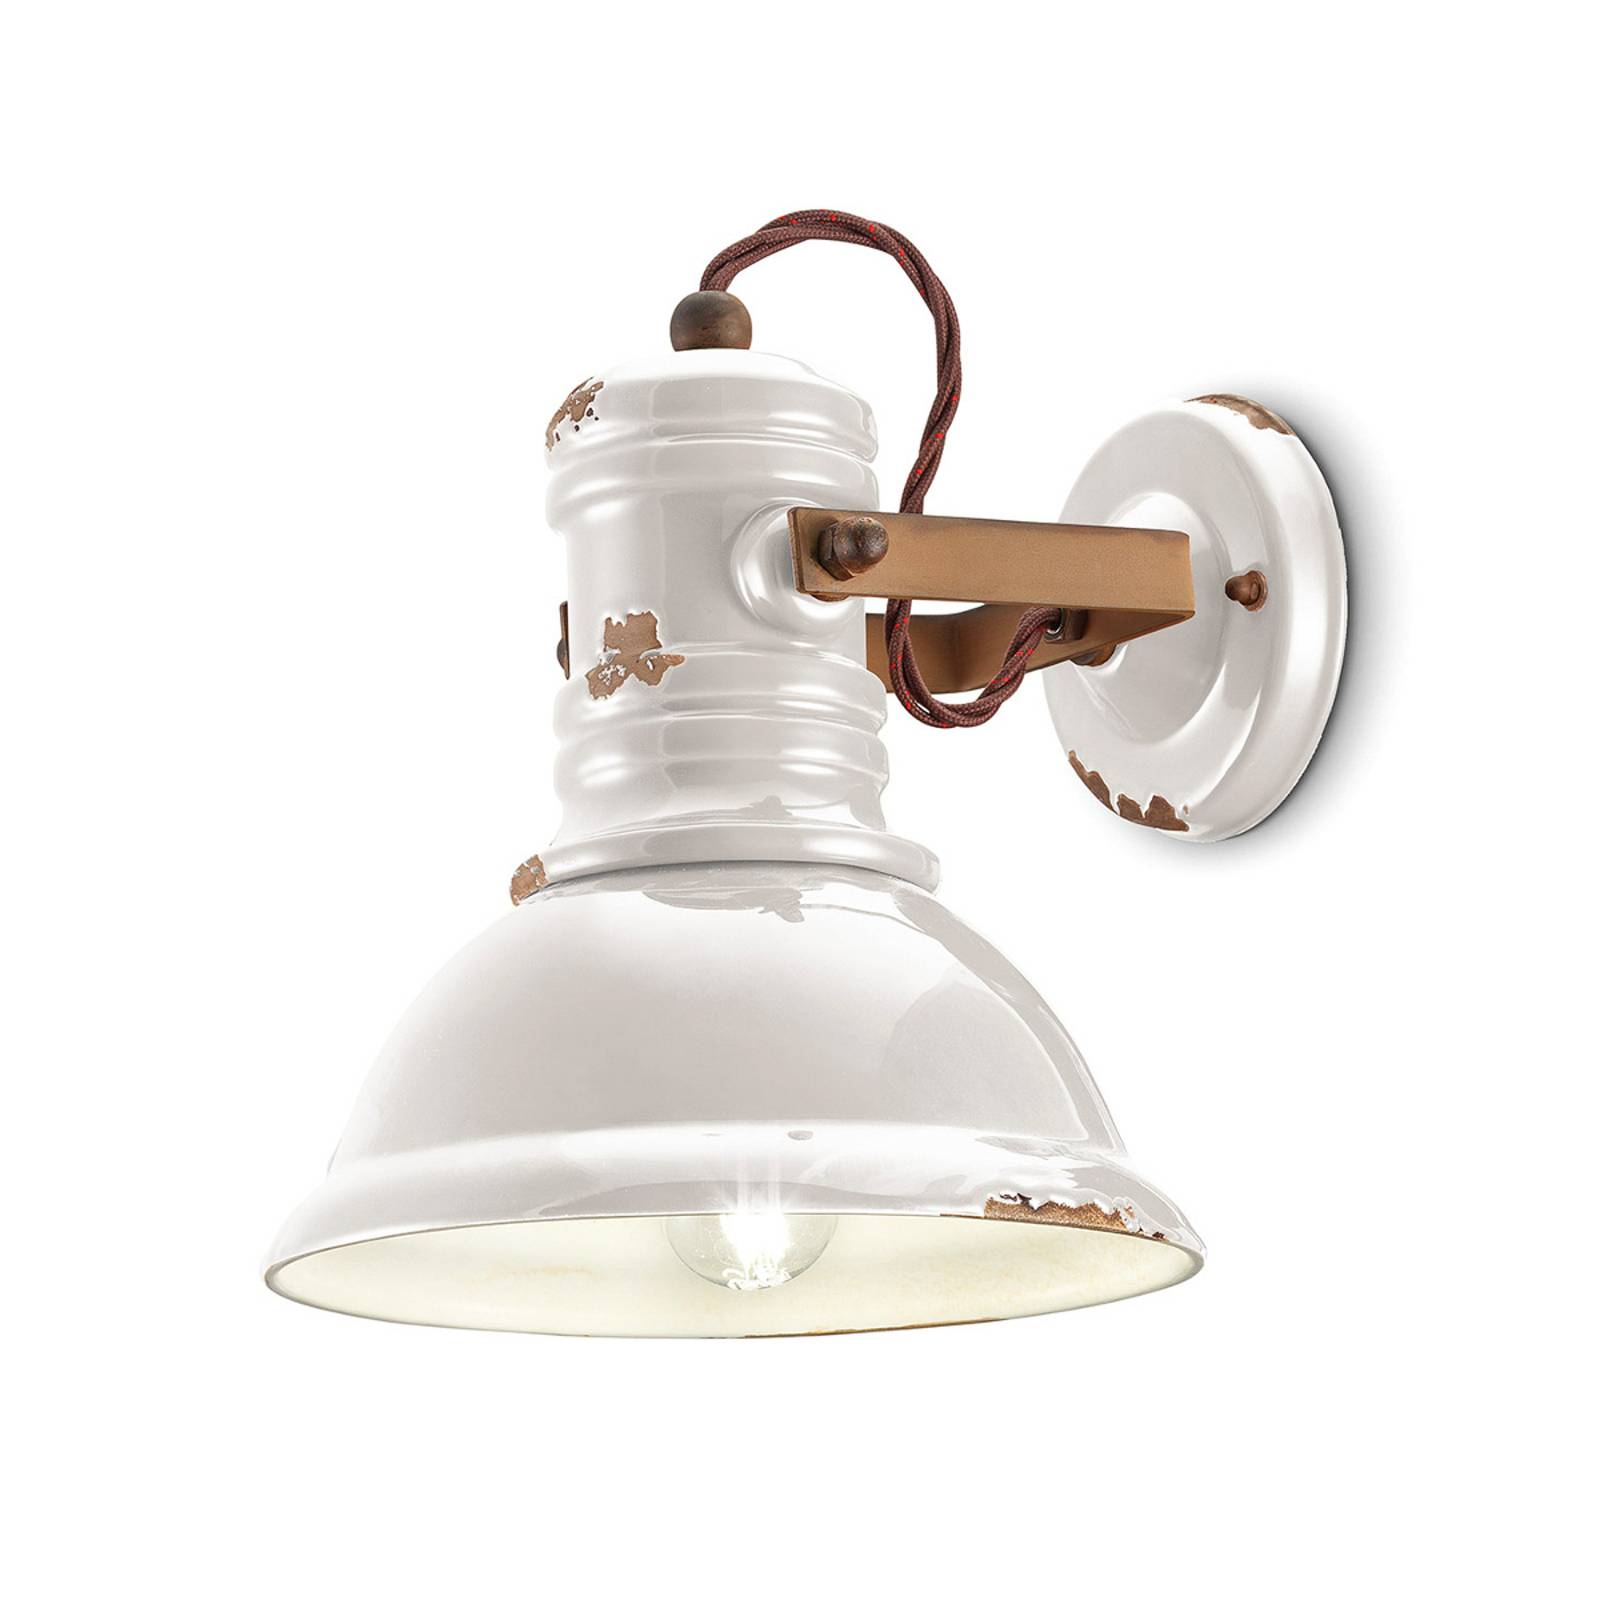 Keramik-Wandlampe C1693 im Industrie-Stil weiß günstig online kaufen